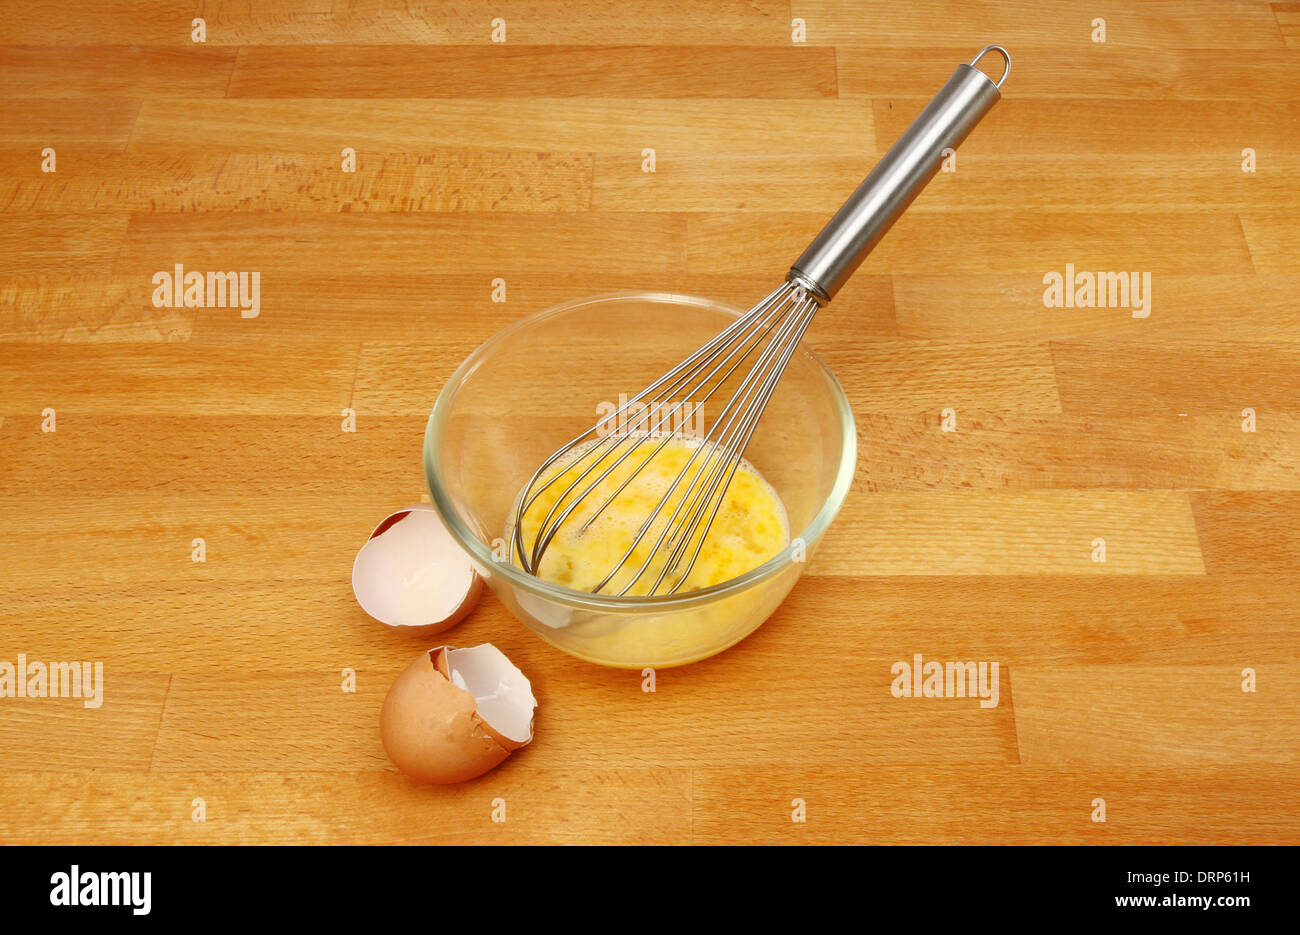 Eiern und einem Schneebesen in einem Glas Schüssel mit Eierschalen auf einem hölzernen Küchenarbeitsplatte Stockfoto